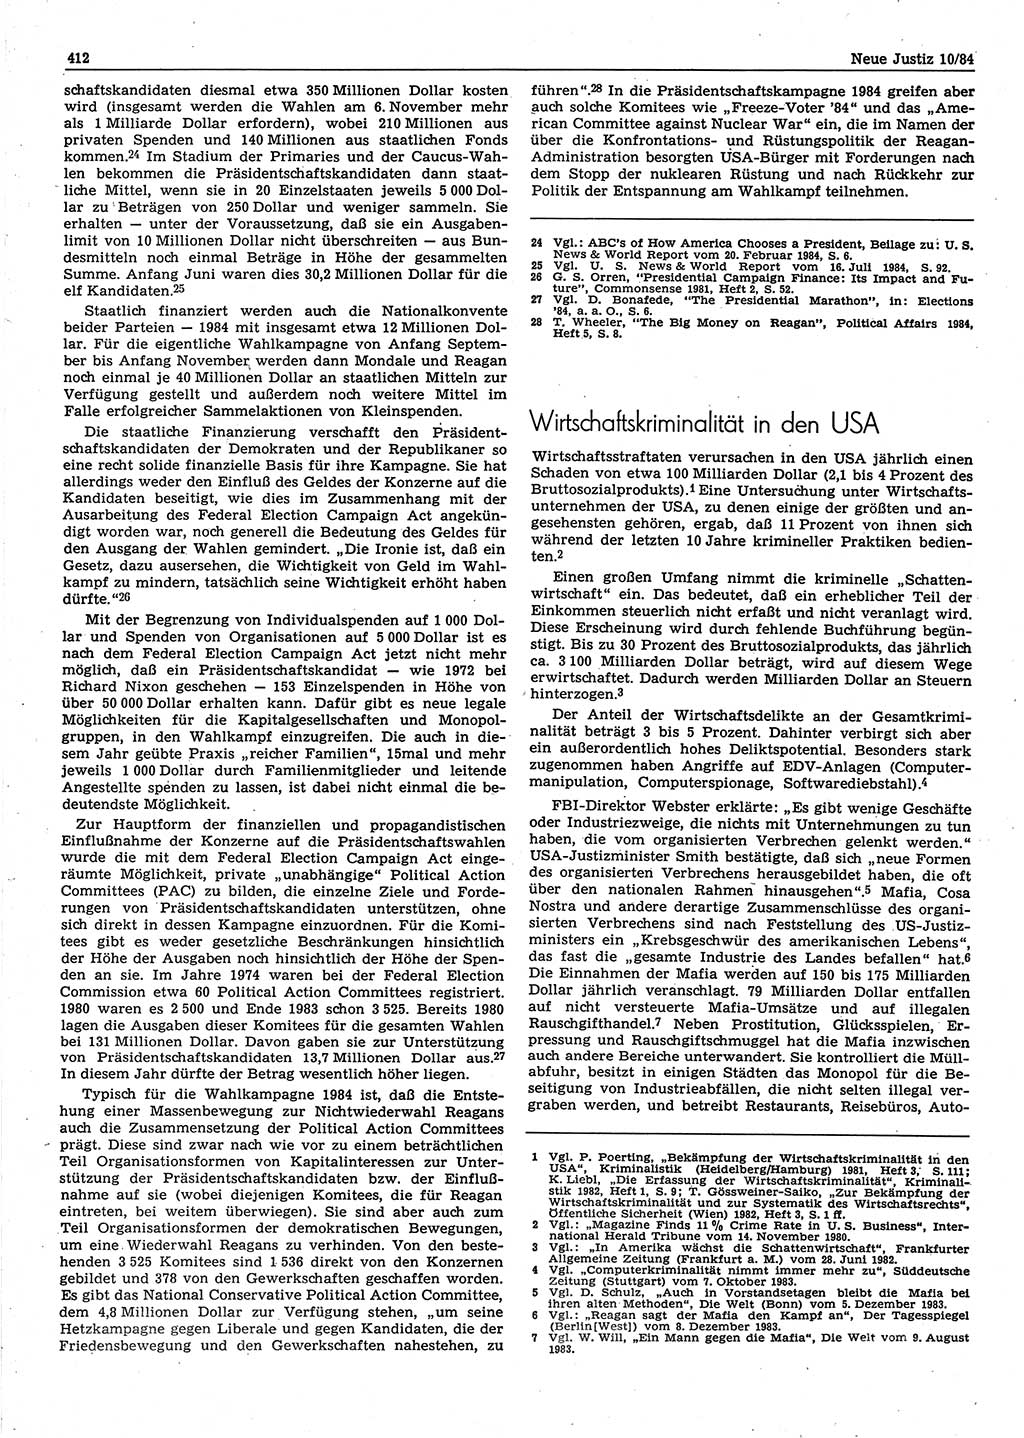 Neue Justiz (NJ), Zeitschrift für sozialistisches Recht und Gesetzlichkeit [Deutsche Demokratische Republik (DDR)], 38. Jahrgang 1984, Seite 412 (NJ DDR 1984, S. 412)